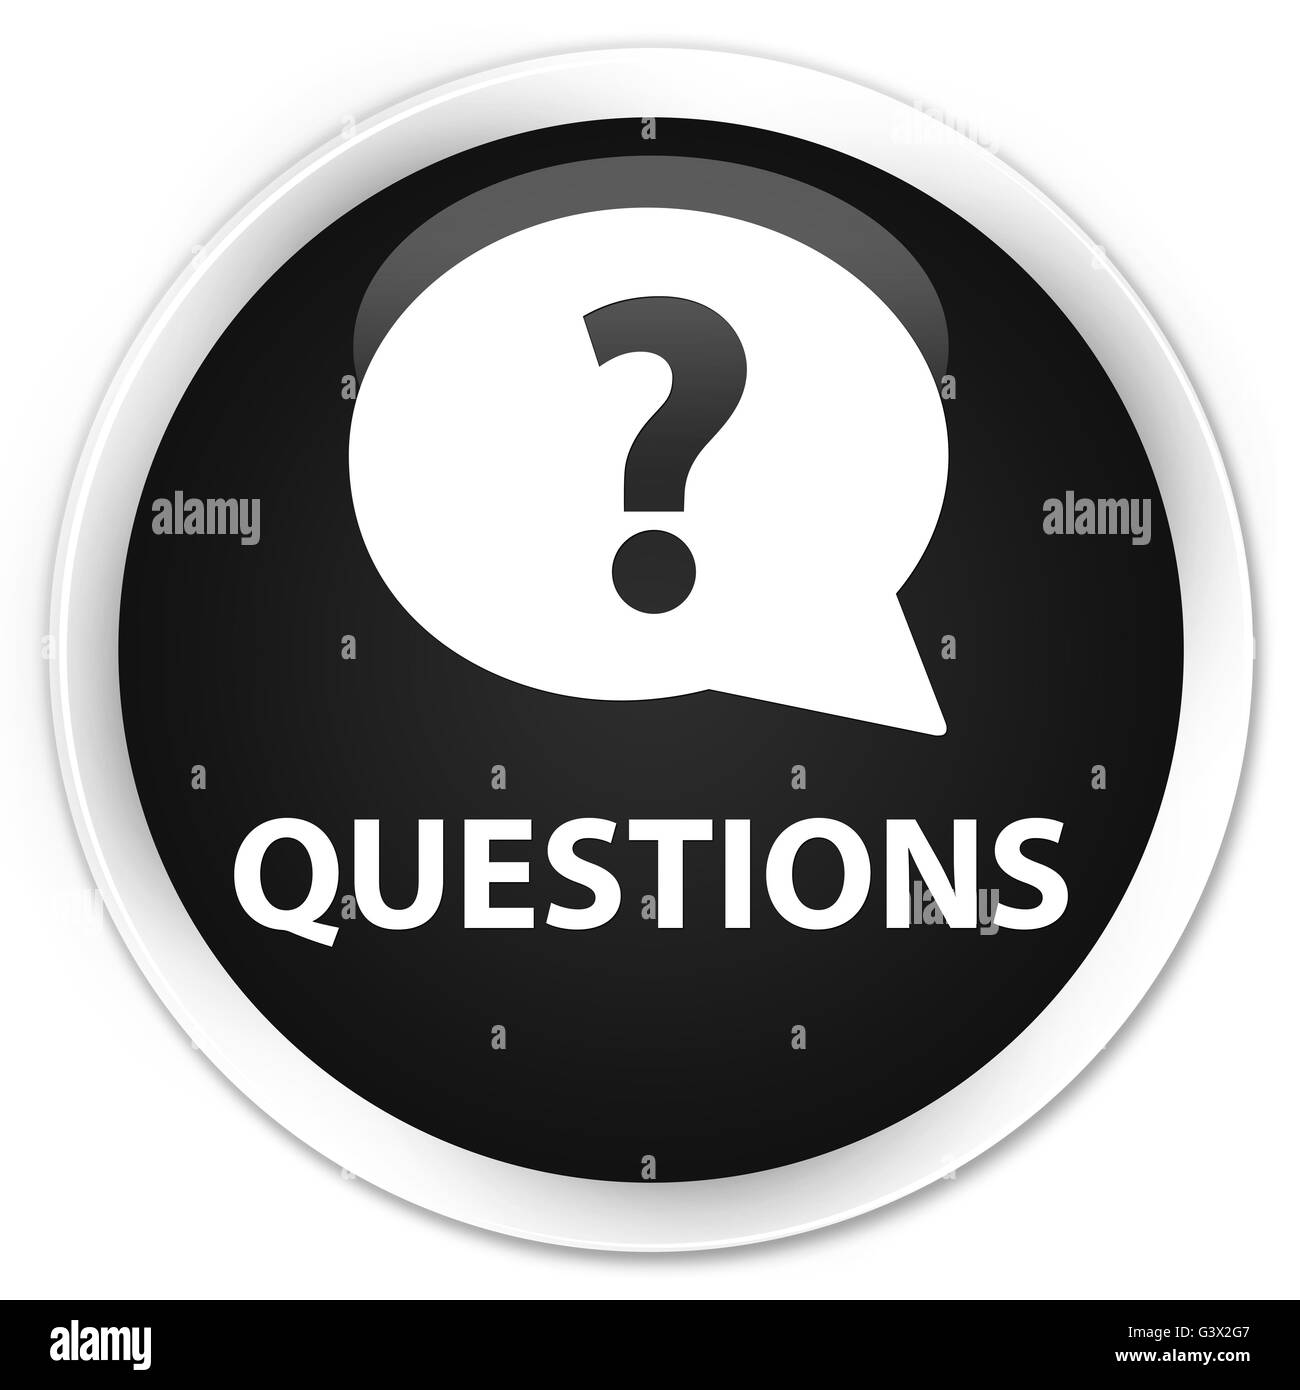 Questions (icône bulle) isolé sur le bouton rond noir premium abstract illustration Banque D'Images